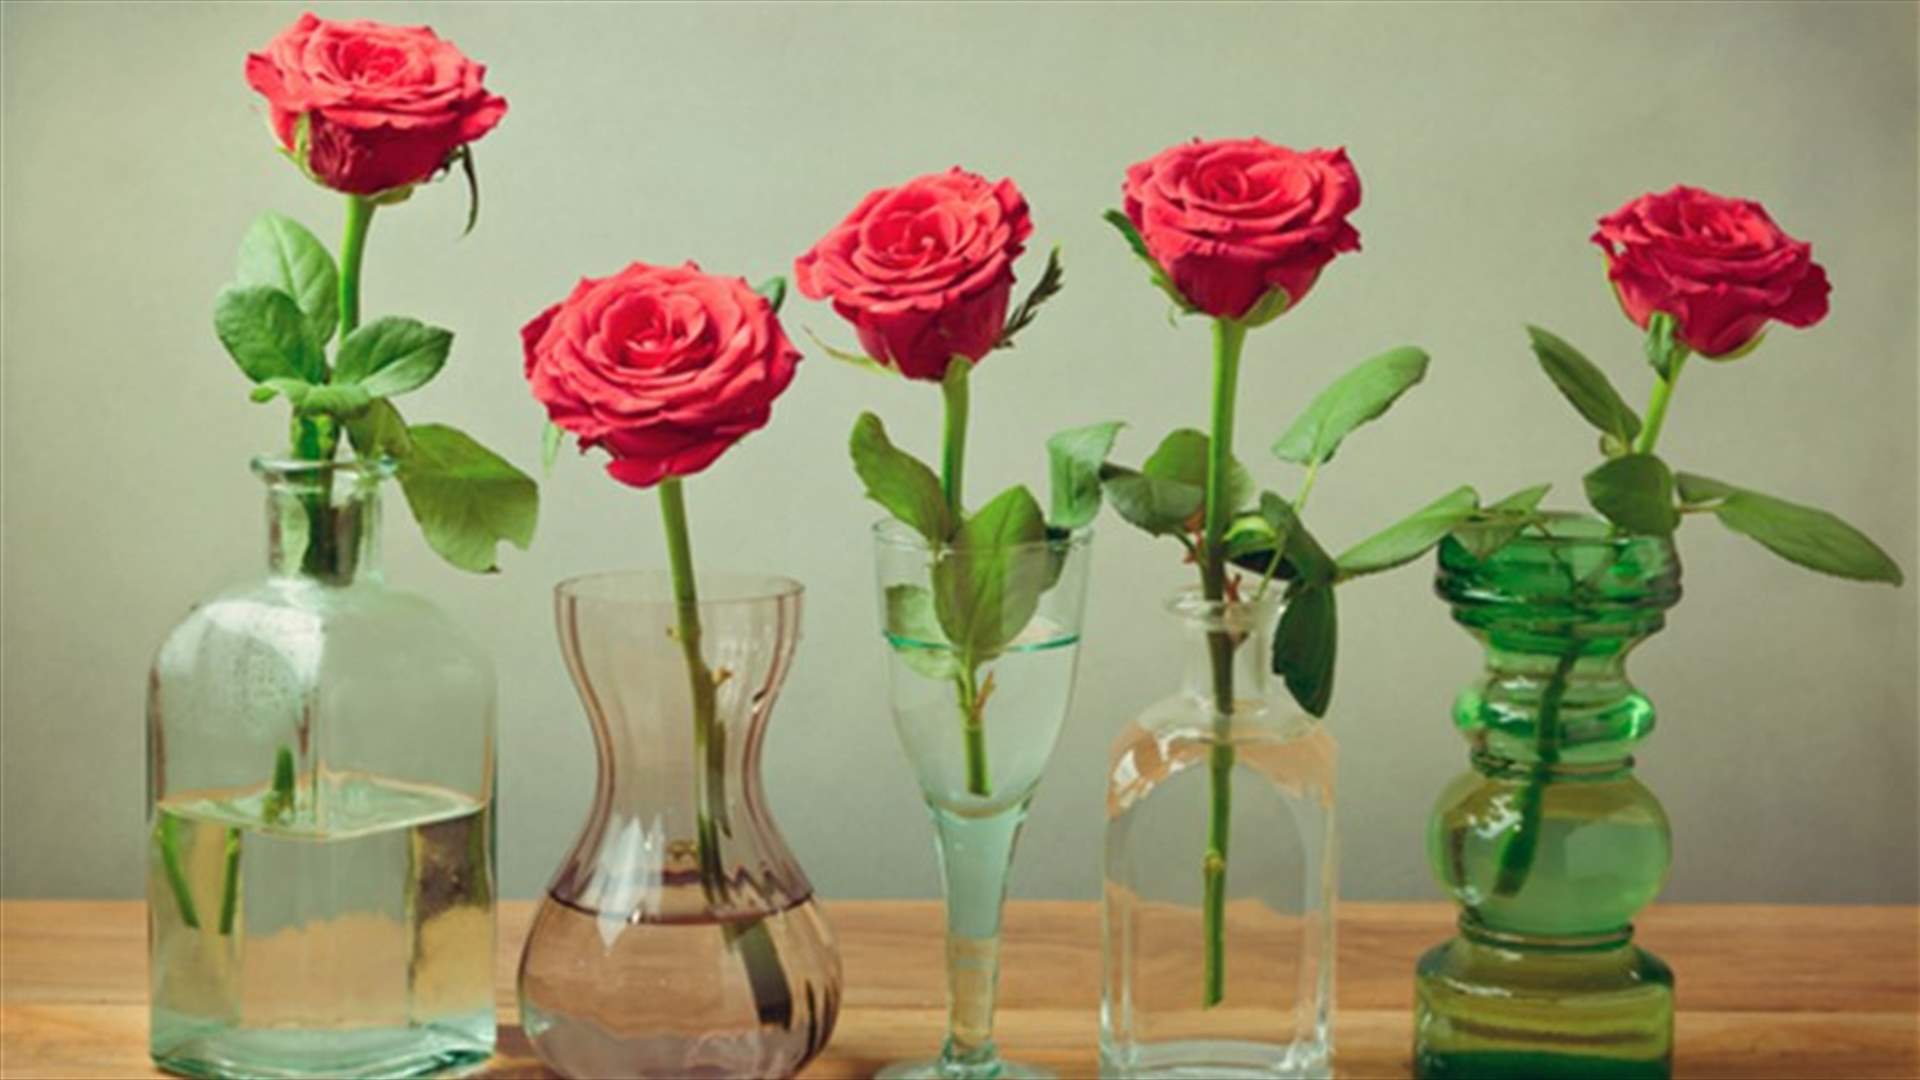 بالفيديو: خدعة بسيطة للمحافظة على الورود لفترةٍ أطول